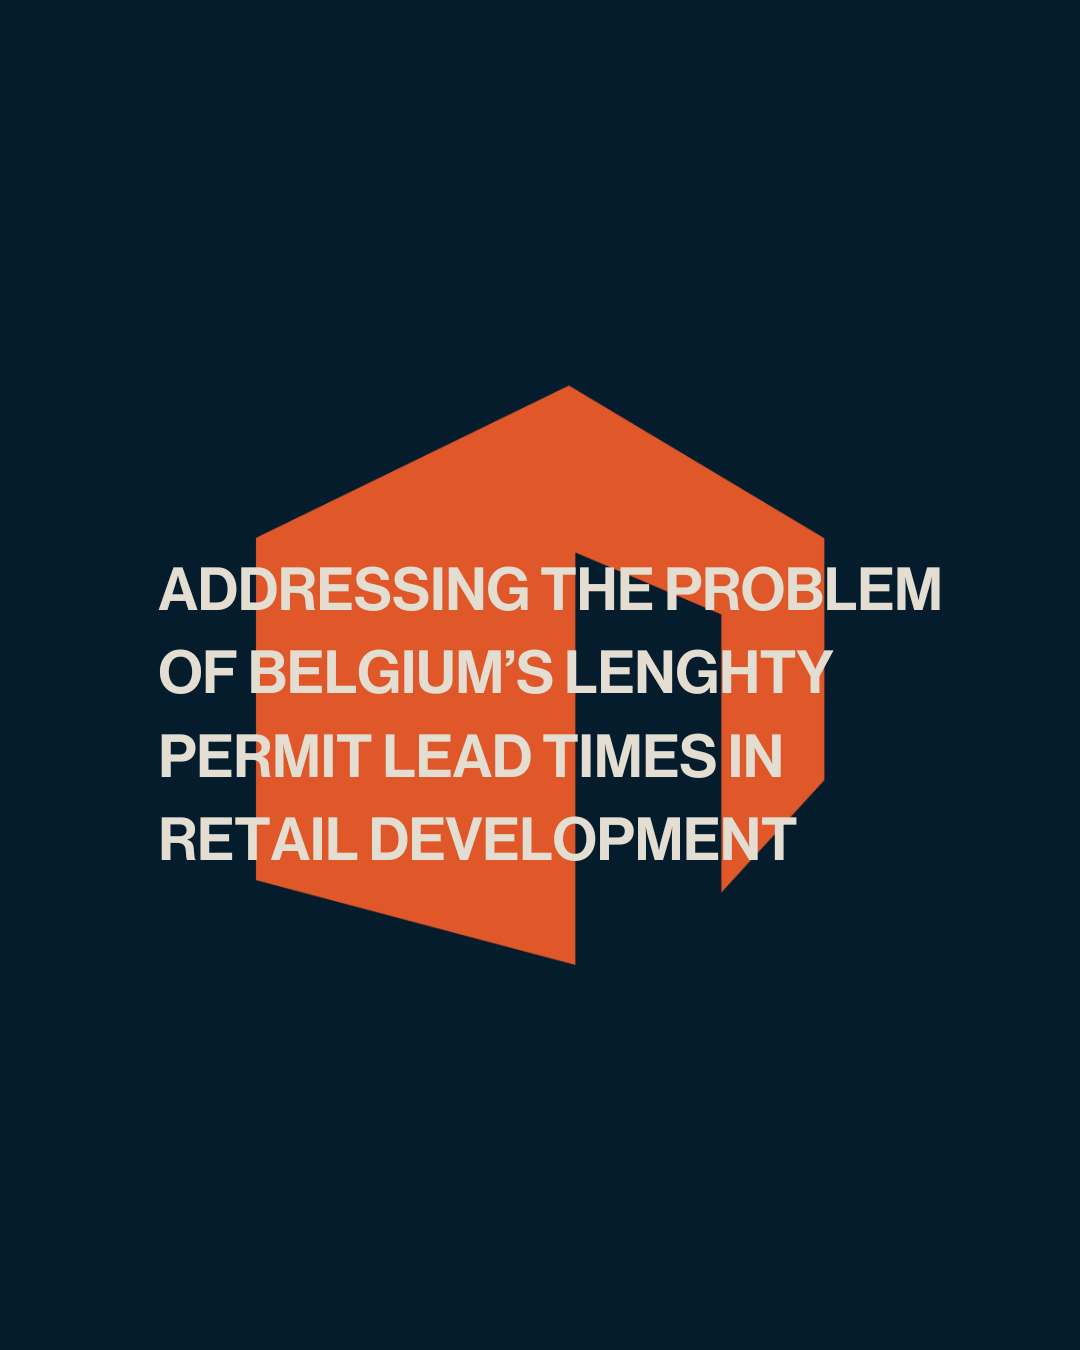 Het probleem van de lange doorlooptijden van vergunningen in België bij de ontwikkeling van vastgoed aanpakken